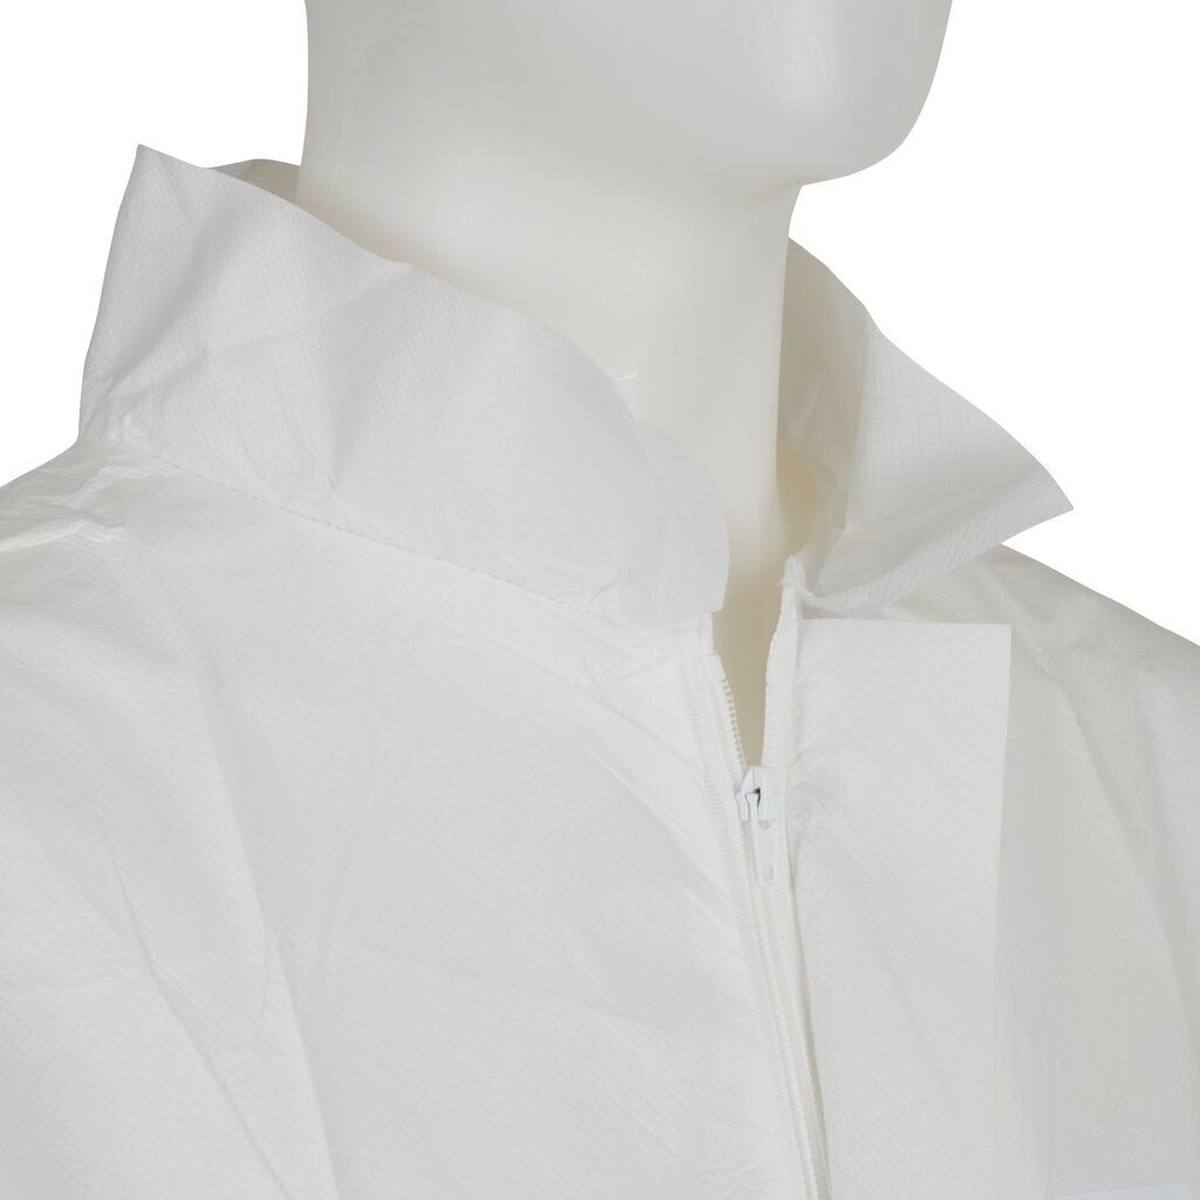 Cappotto 3M 4440, bianco, taglia L, particolarmente traspirante, molto leggero, con cerniera, polsini in maglia